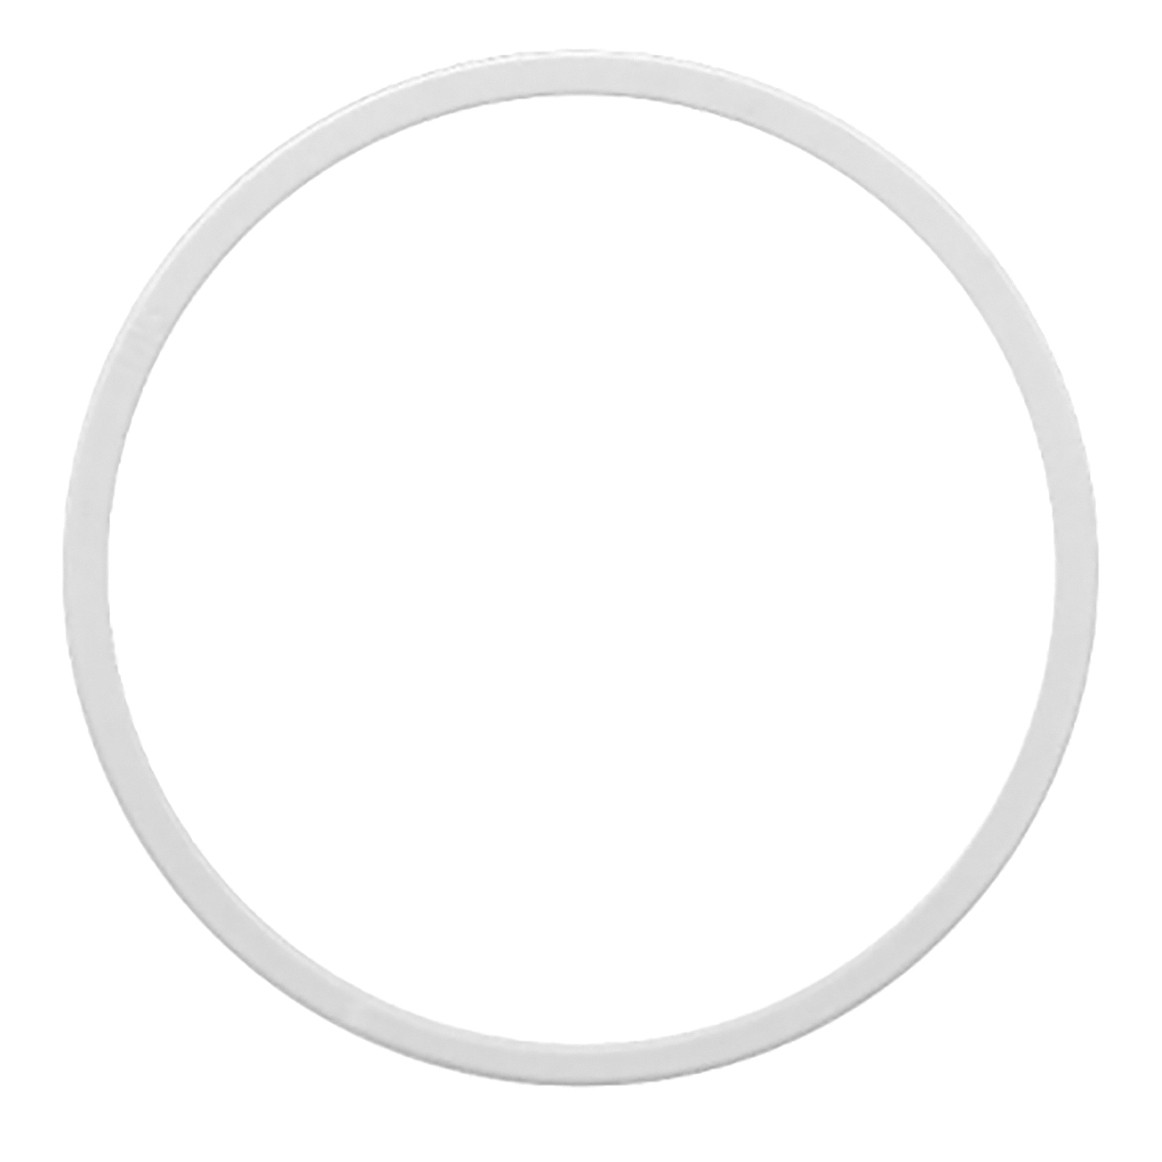 Кольцо под светильник, Ø (мм): 210, 220, 225, 230, 235, 240, 250